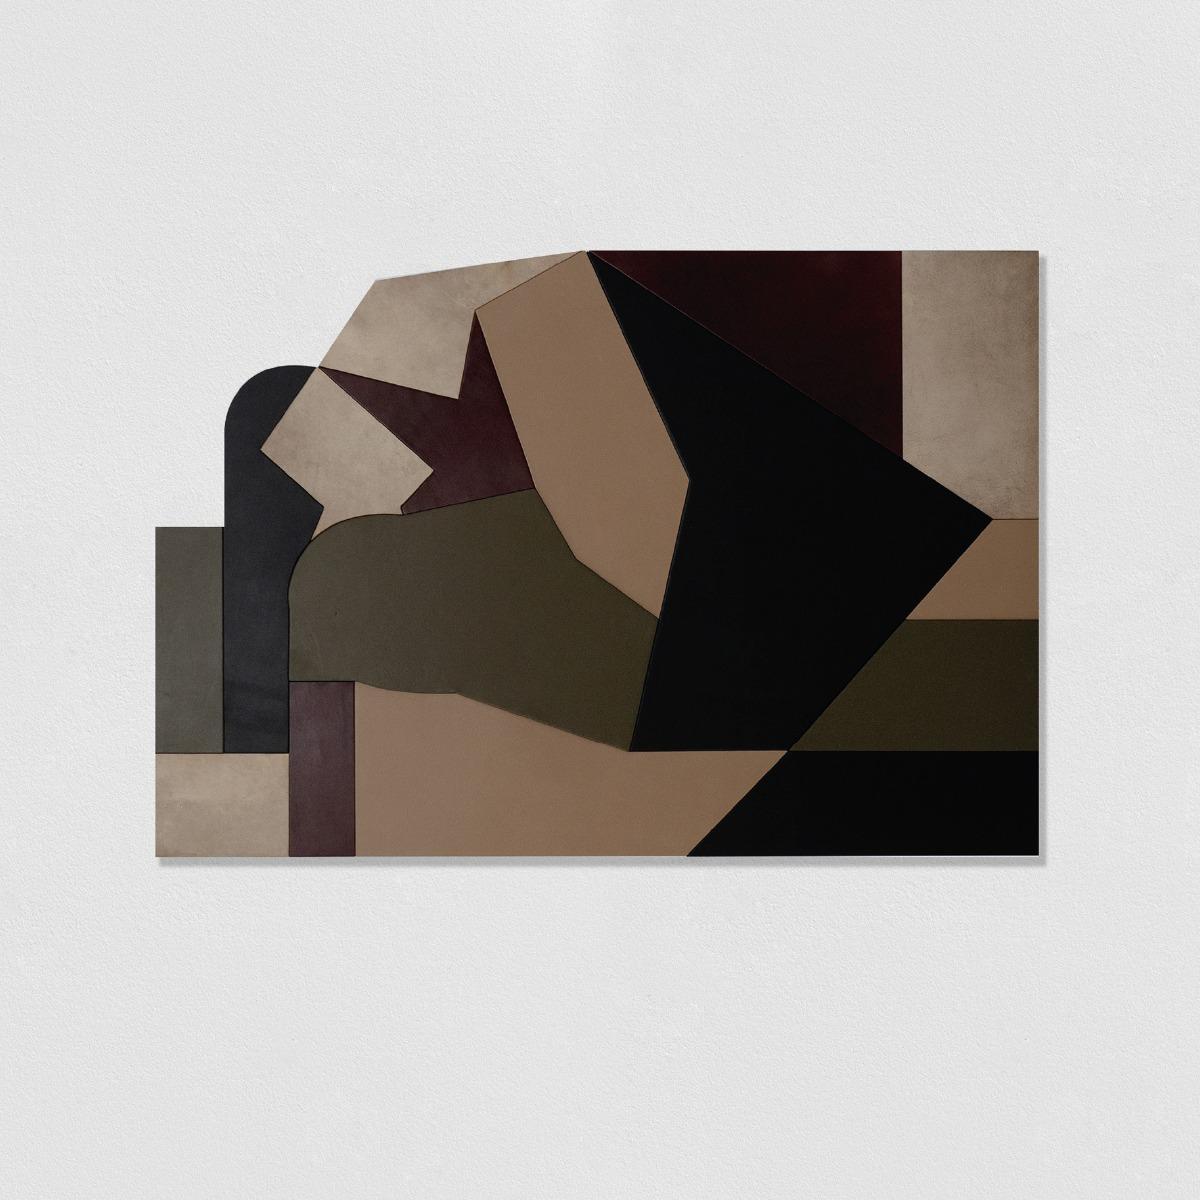 Cyber sexual 21, 2020
Sculpture Murale
150 x 130 cm
Cuire marouflé sur bois